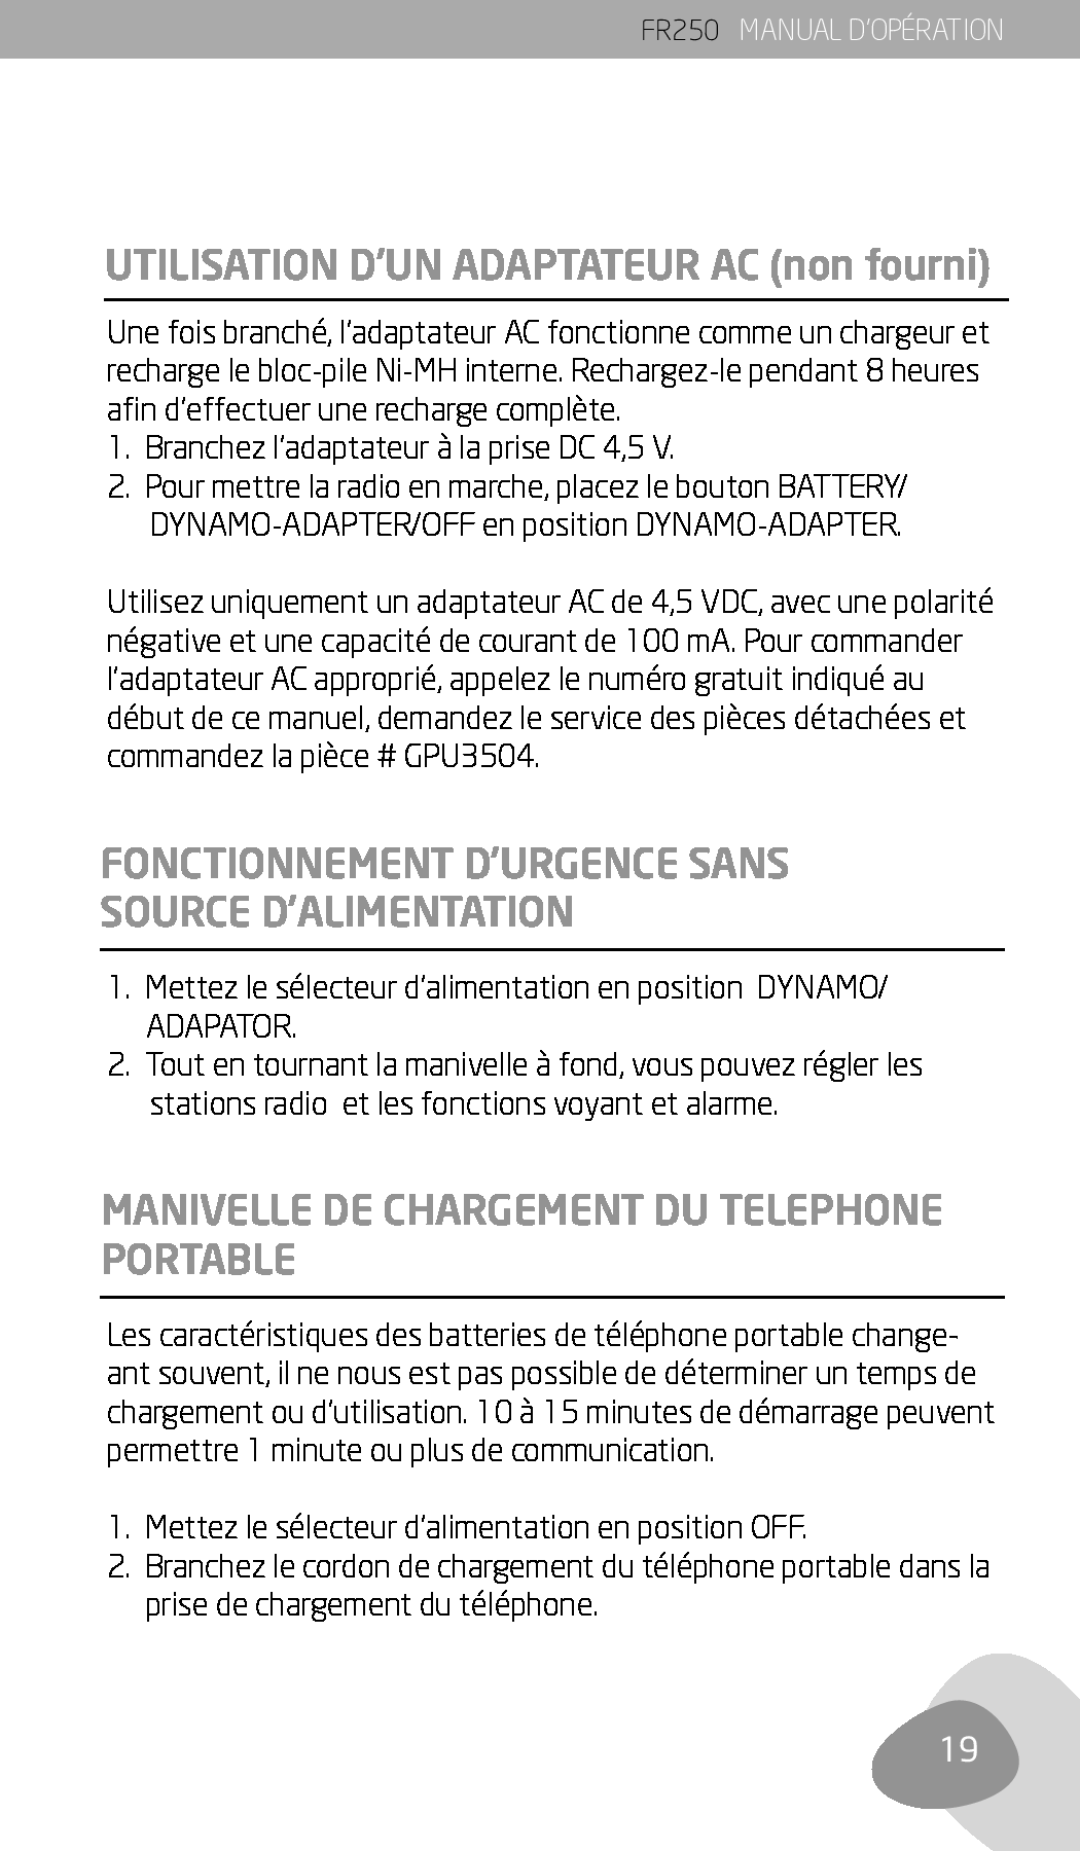 Eton FR250 owner manual UTILISATION D’UN ADAPTATEUR AC non fourni, Manivelle De Chargement Du Telephone Portable 